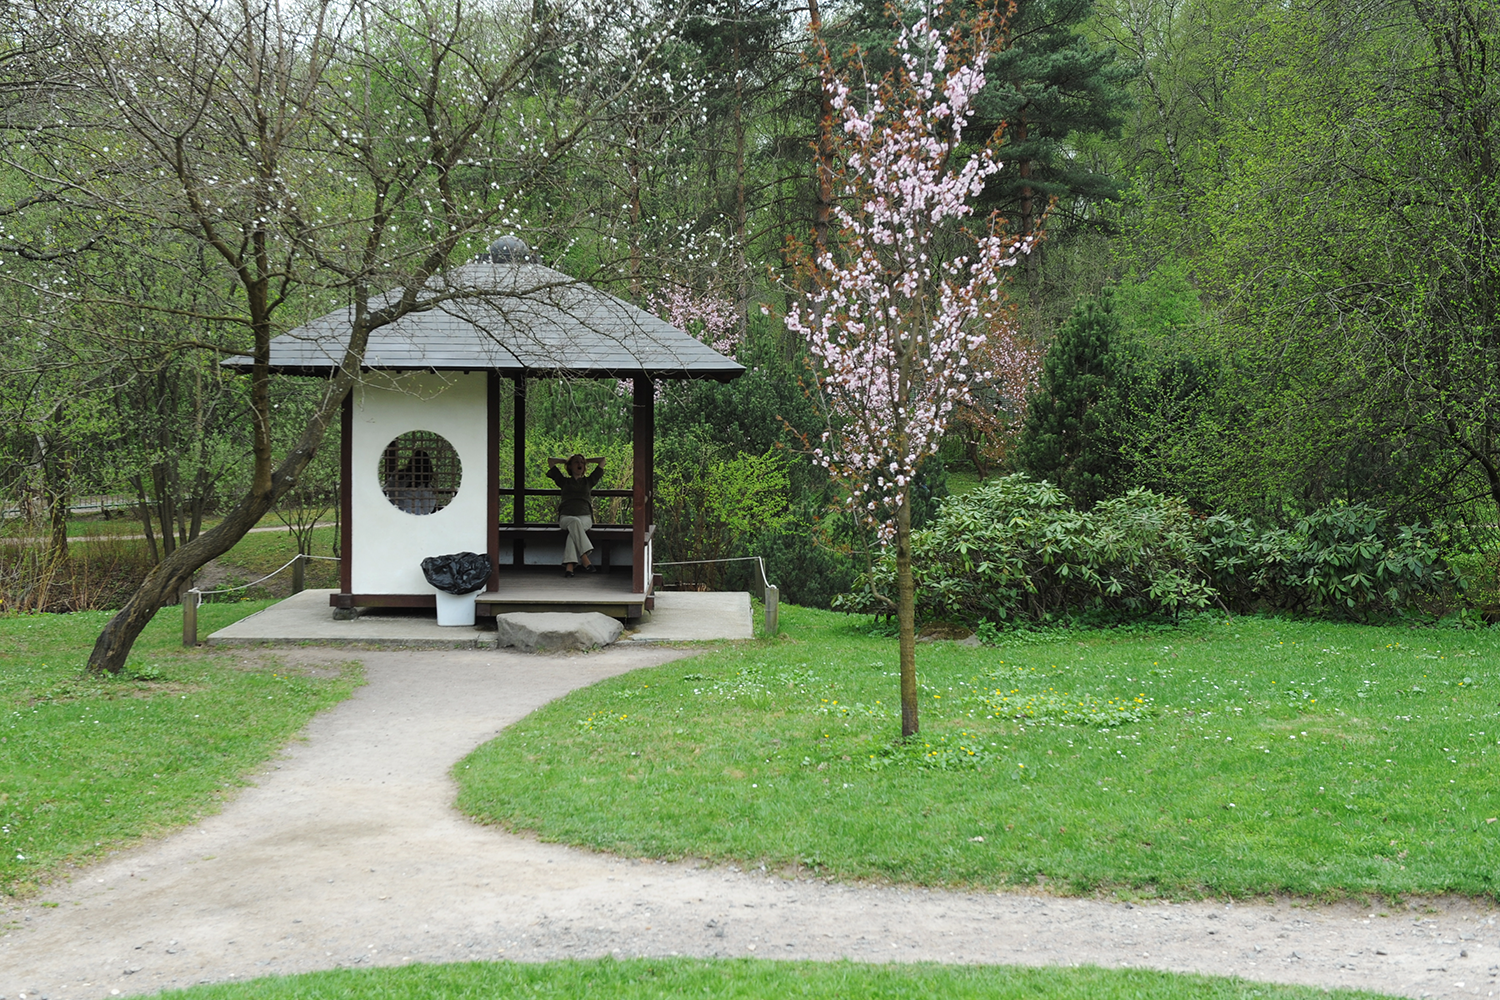 Фото японского сада в ботаническом саду